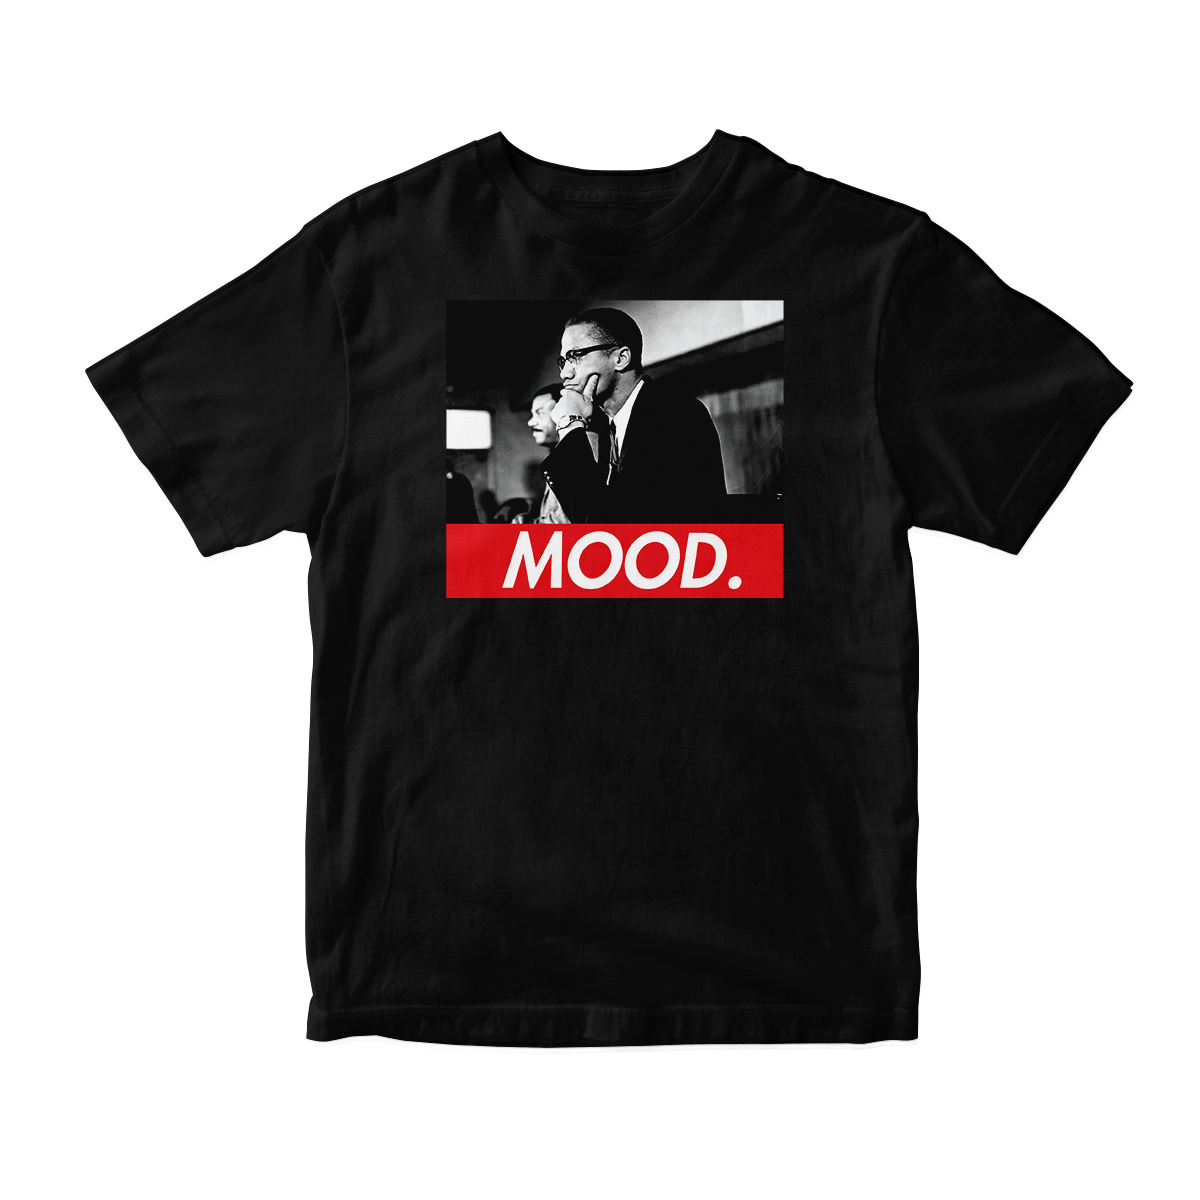 'Malcolm X MOOD' Short Sleeve Tee